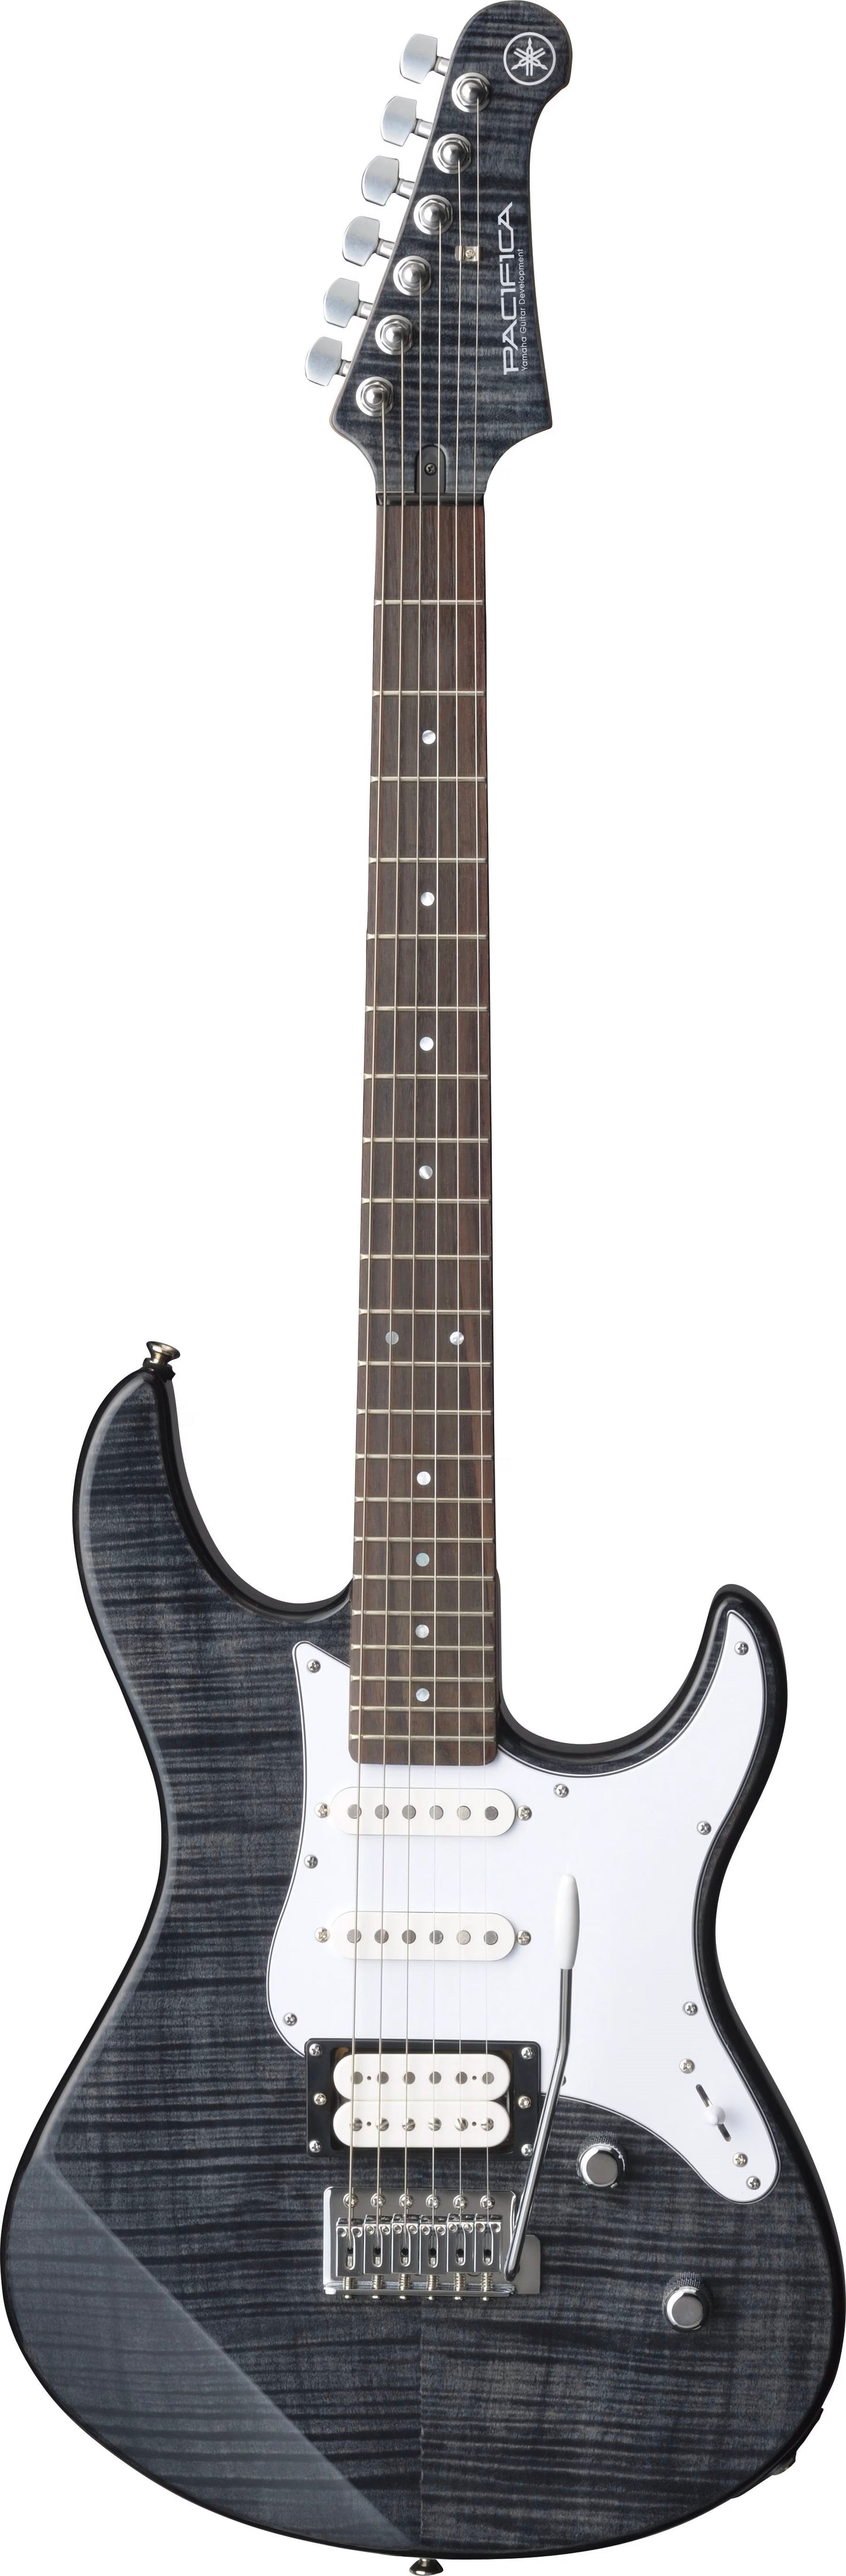 Yamaha : Electric Guitar Translucent Black